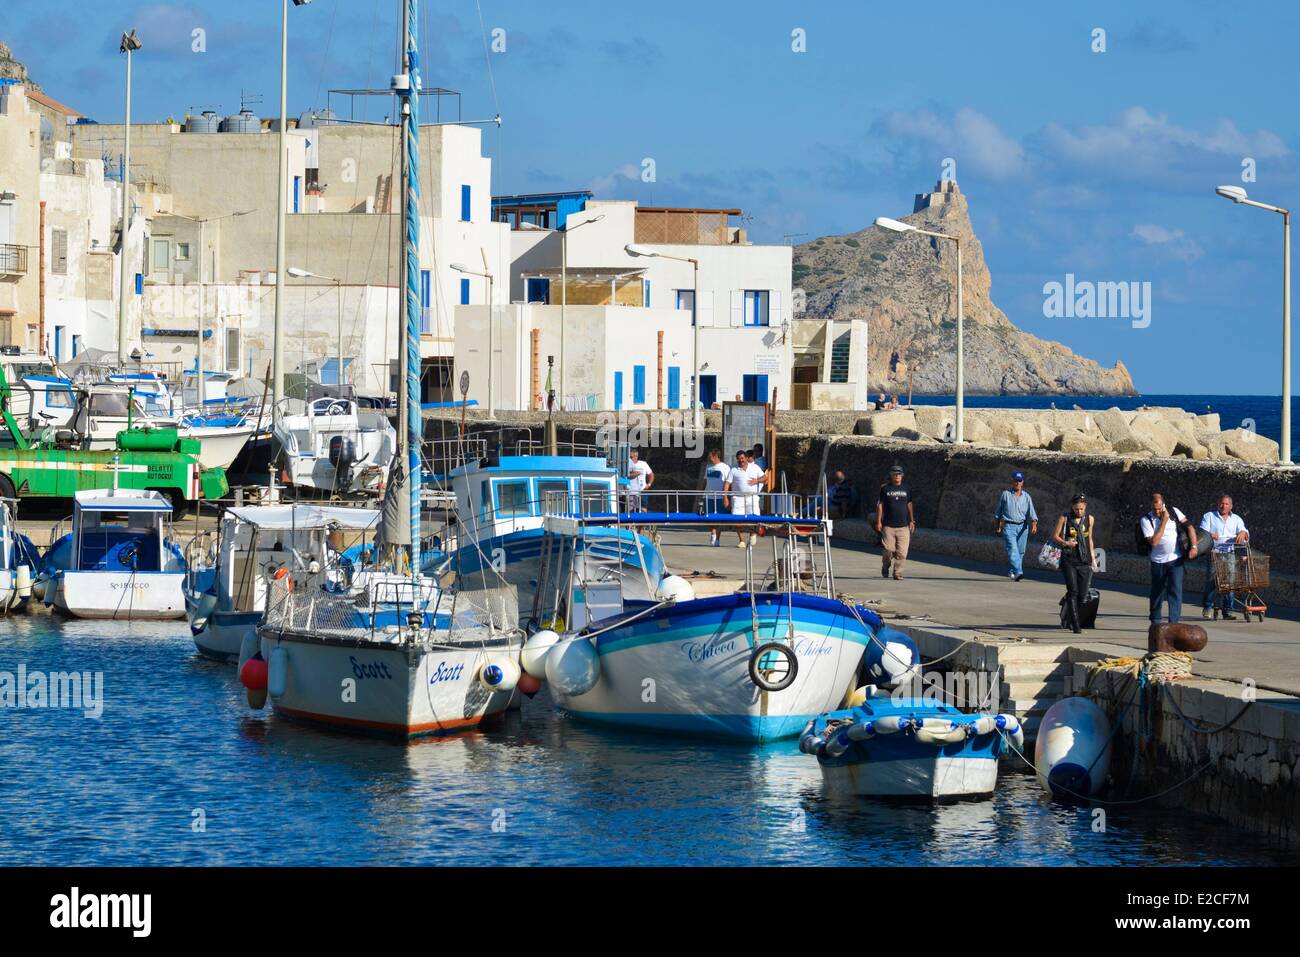 L'Italia, sicilia, isole Egadi, isola di Marettimo, porto di pescatori con la tipica architettura mediterranea case imbiancate a calce square in background Foto Stock